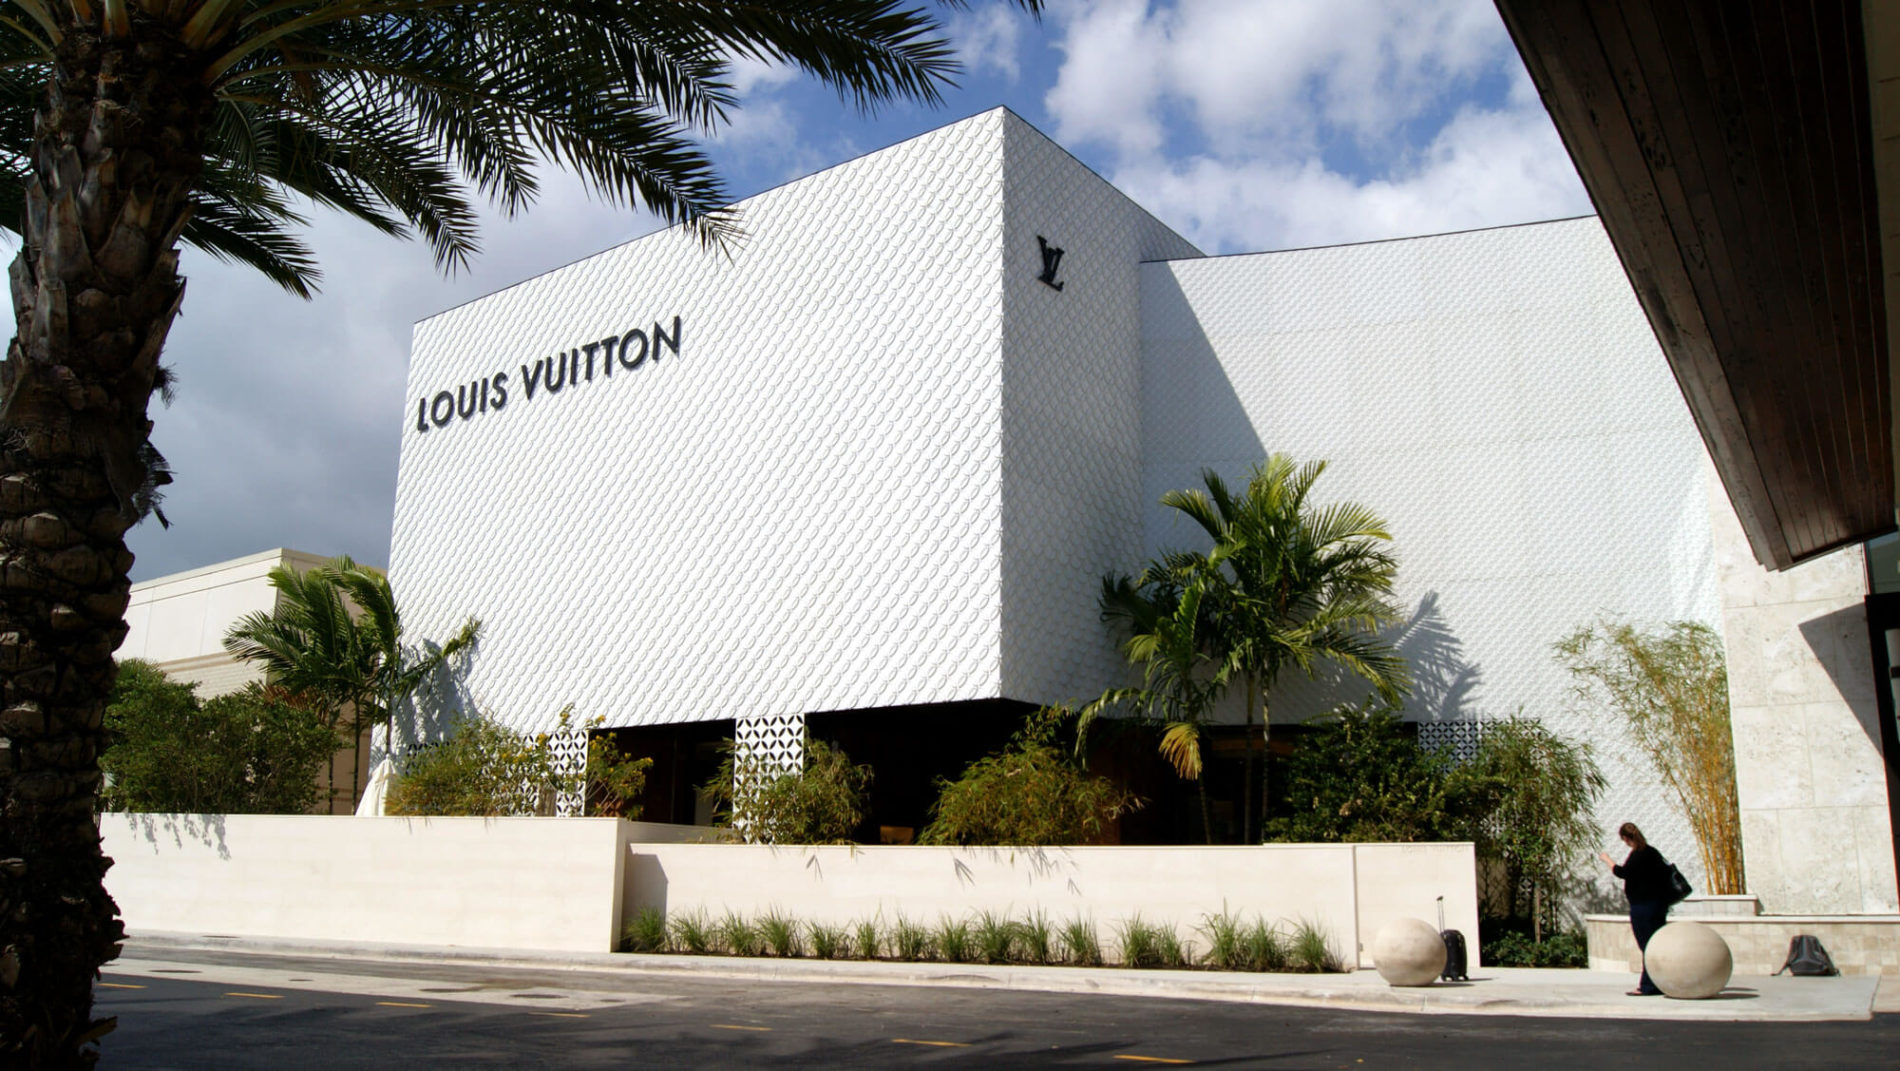 Louis Vuitton Charm Bracelet for Sale in Hialeah, FL - OfferUp